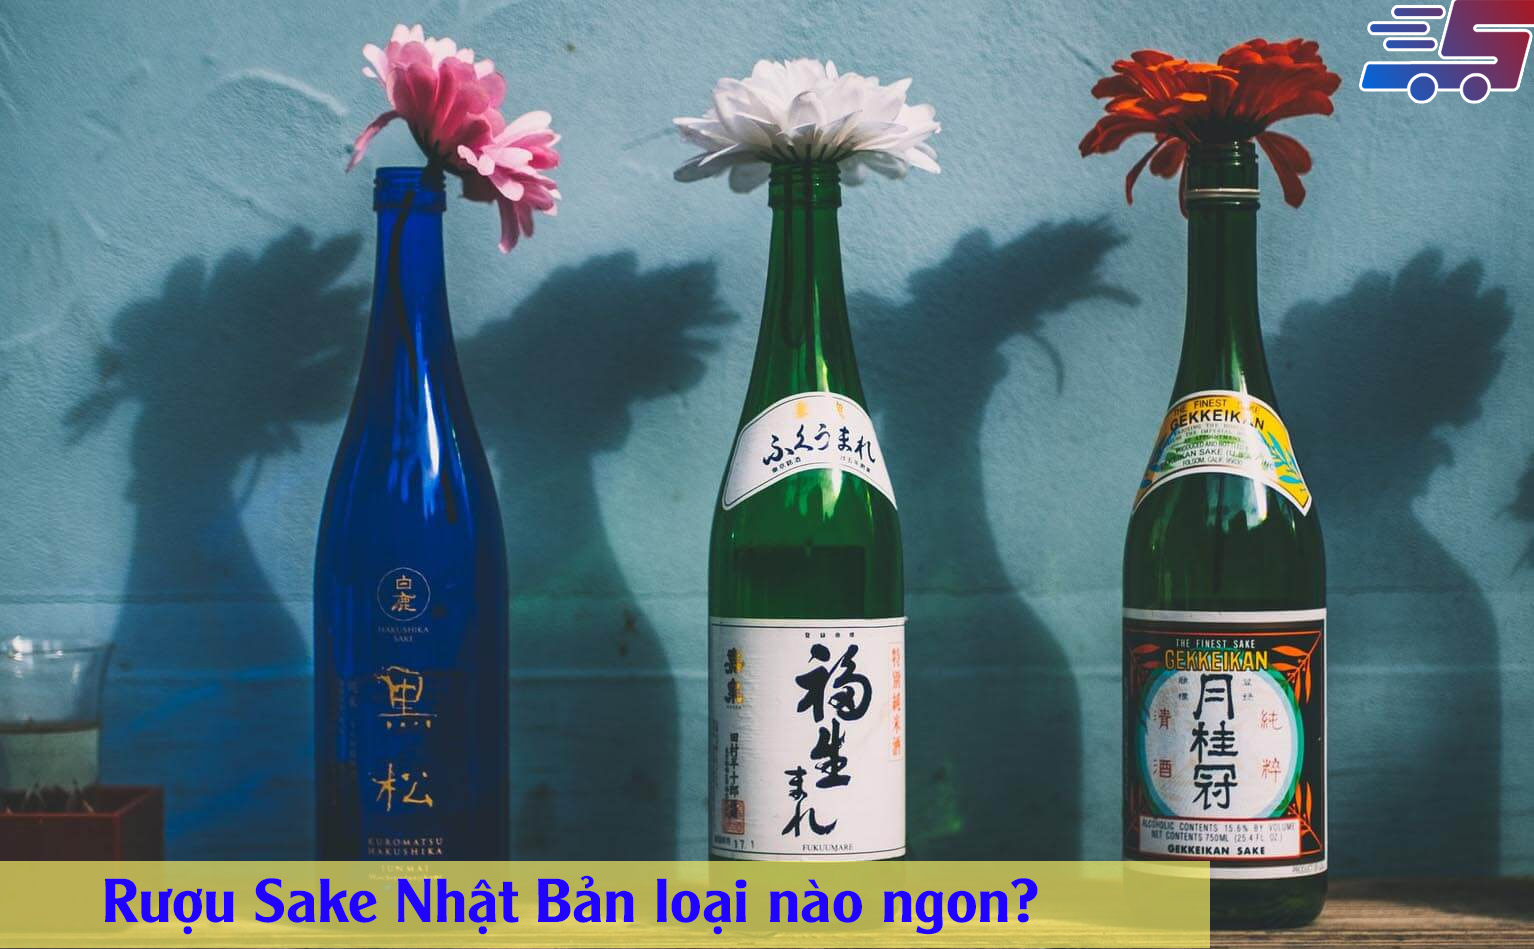 Rượu sake Nhật Bản loại nào ngon?